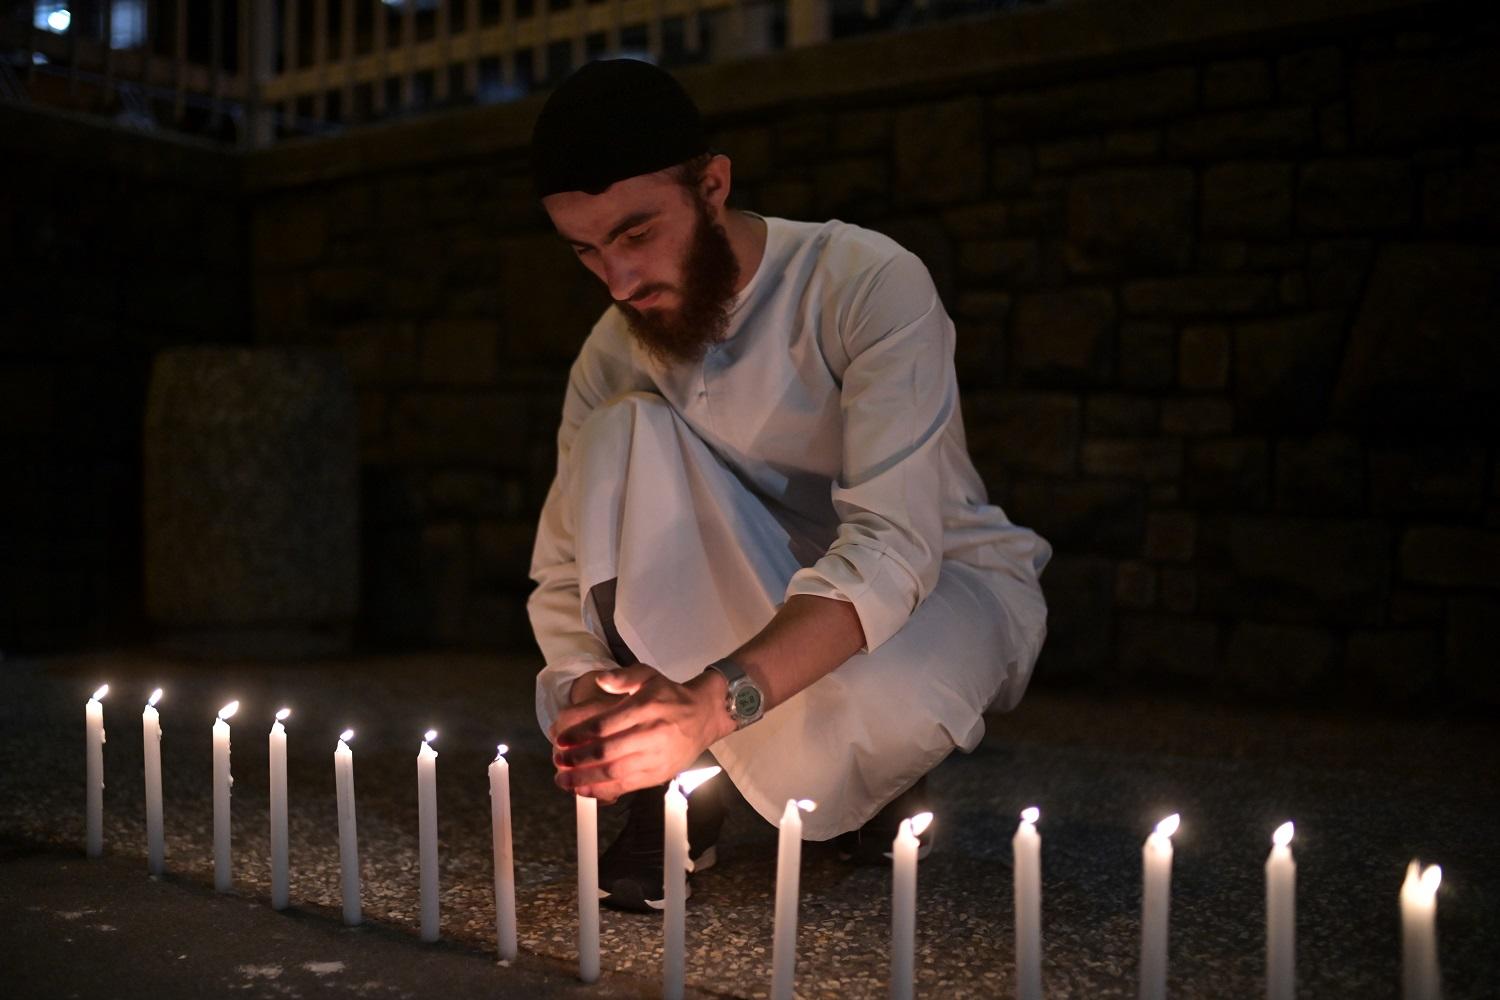 رجل يضيء 49 شمعة قرب مستشفى "كرايستشيرش" استذكارا لضحايا الاعتداء الإرهابي على مسجدين في نيوزيلندا، 16 مارس 2019. أ ف ب 